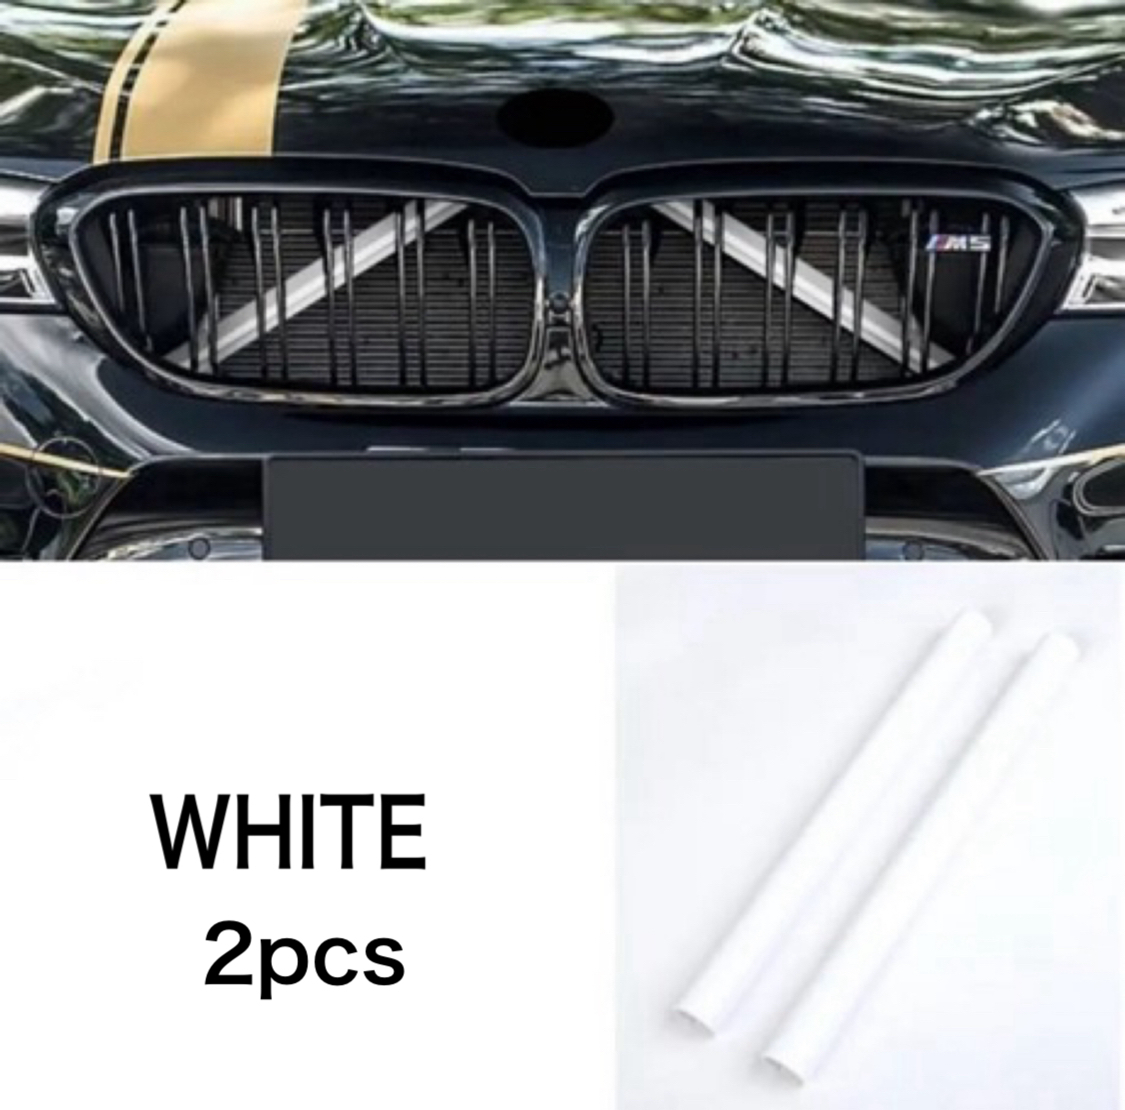 デザイン性UP♪ BMW フロントグリル 補強バー カバー 白 Z4 E89 sDrive 20i 23i 35i 35is Mスポーツ GTスピリット Z4シリーズの画像1